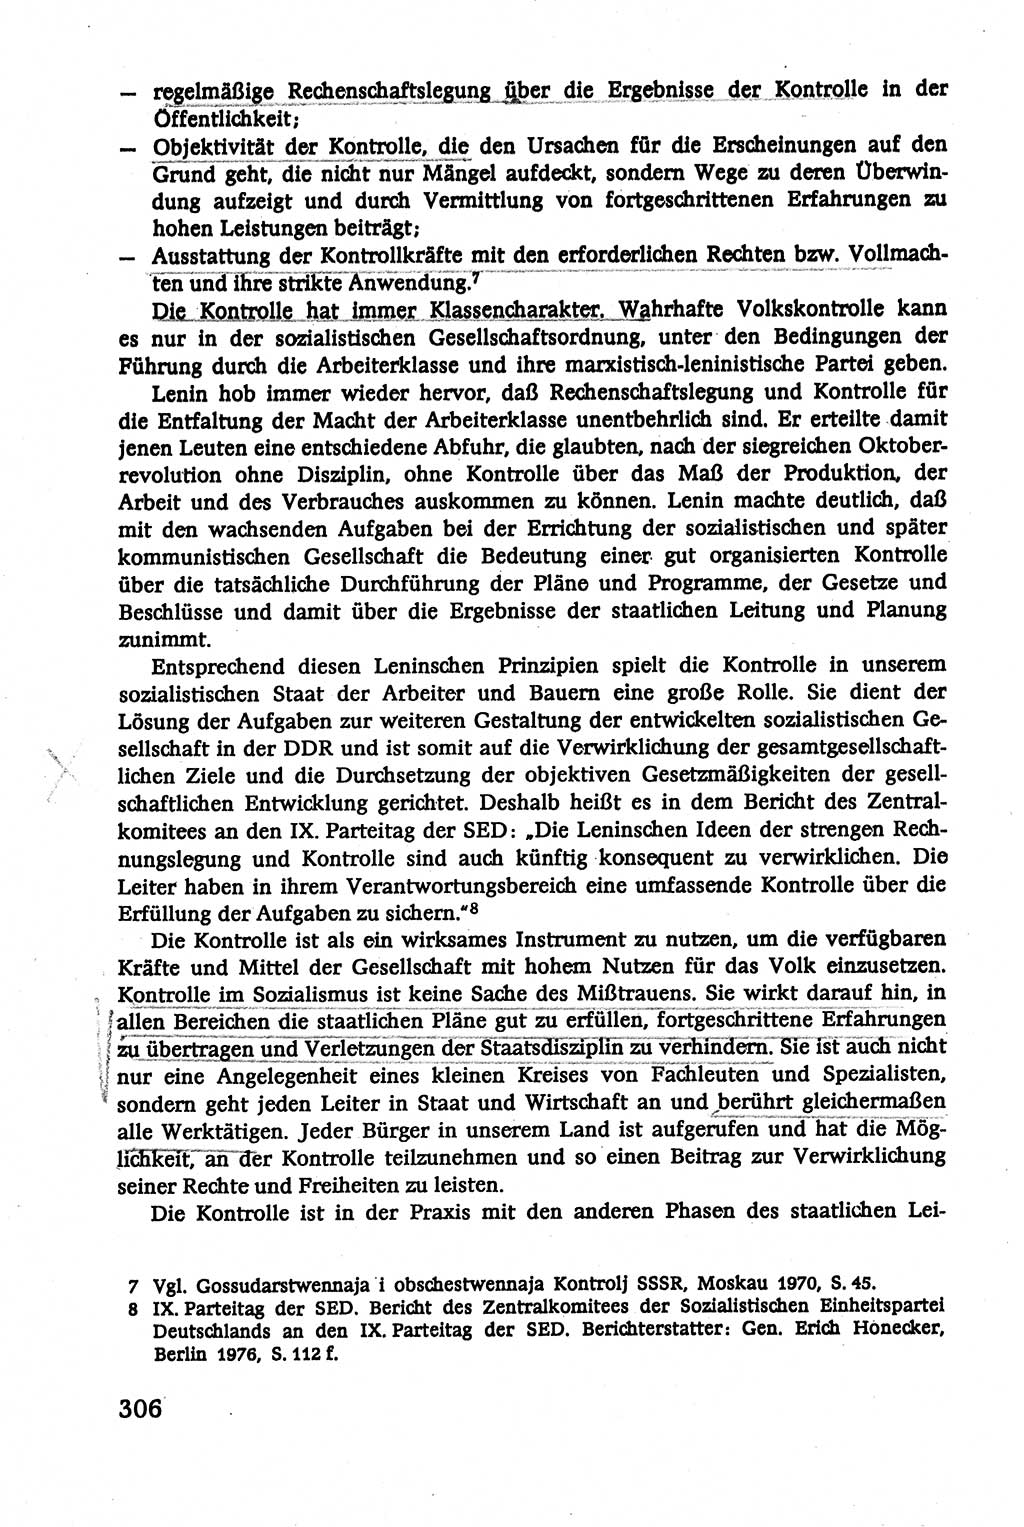 Verwaltungsrecht [Deutsche Demokratische Republik (DDR)], Lehrbuch 1979, Seite 306 (Verw.-R. DDR Lb. 1979, S. 306)